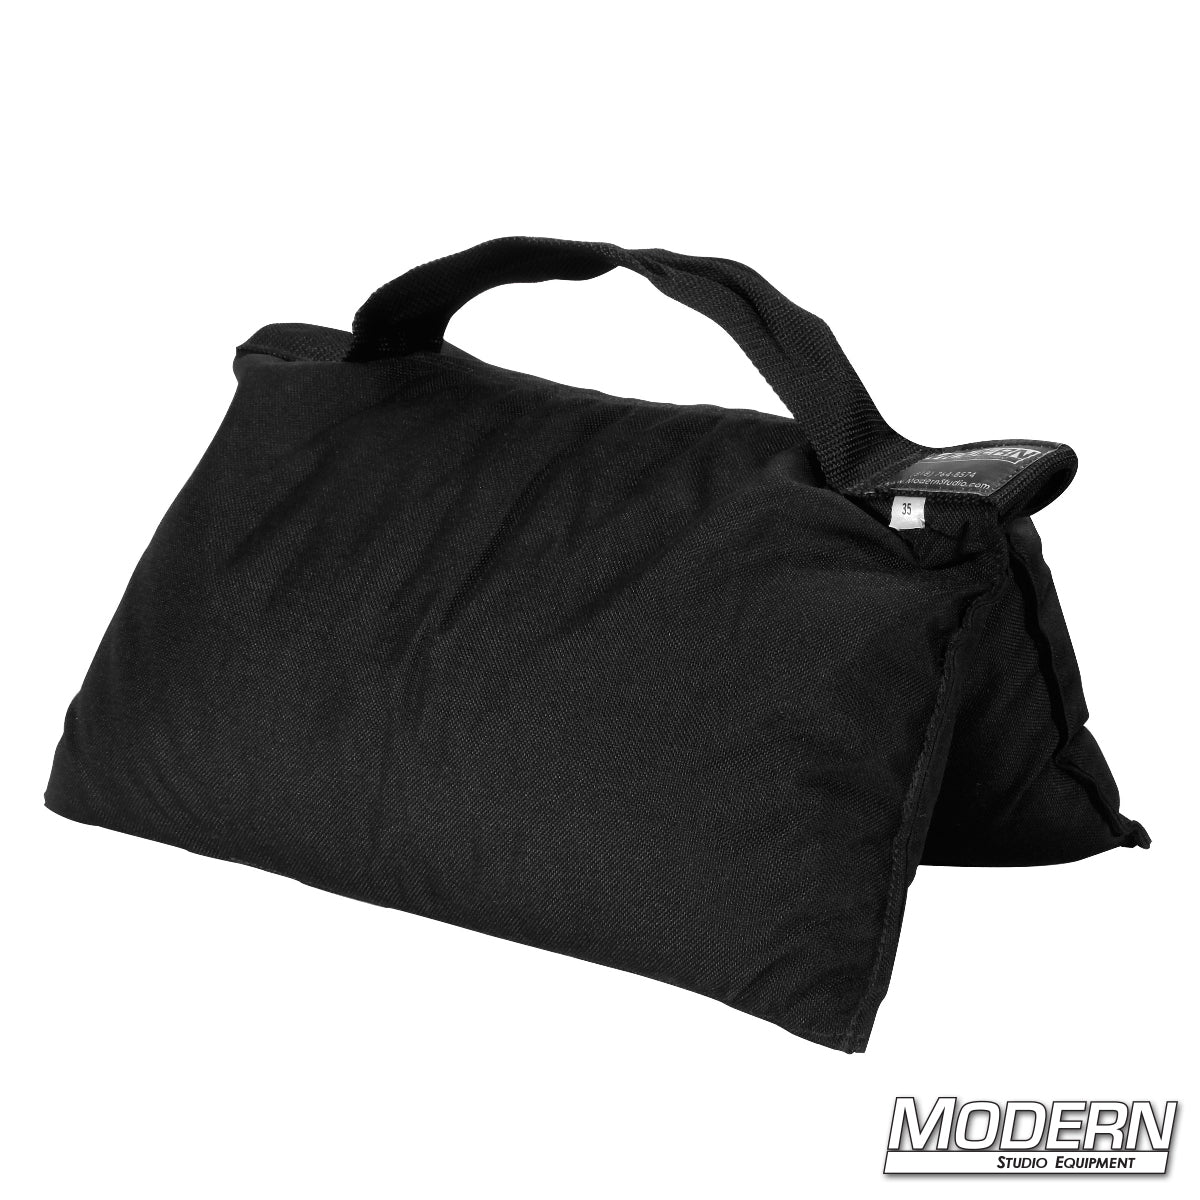 Sandbag (35 lbs.)